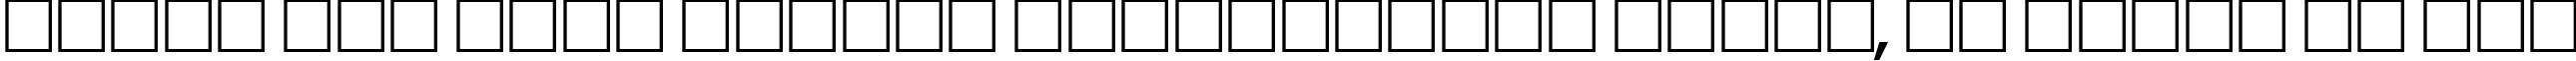 Пример написания шрифтом AGLettericaExtraCompressed Oblique текста на русском